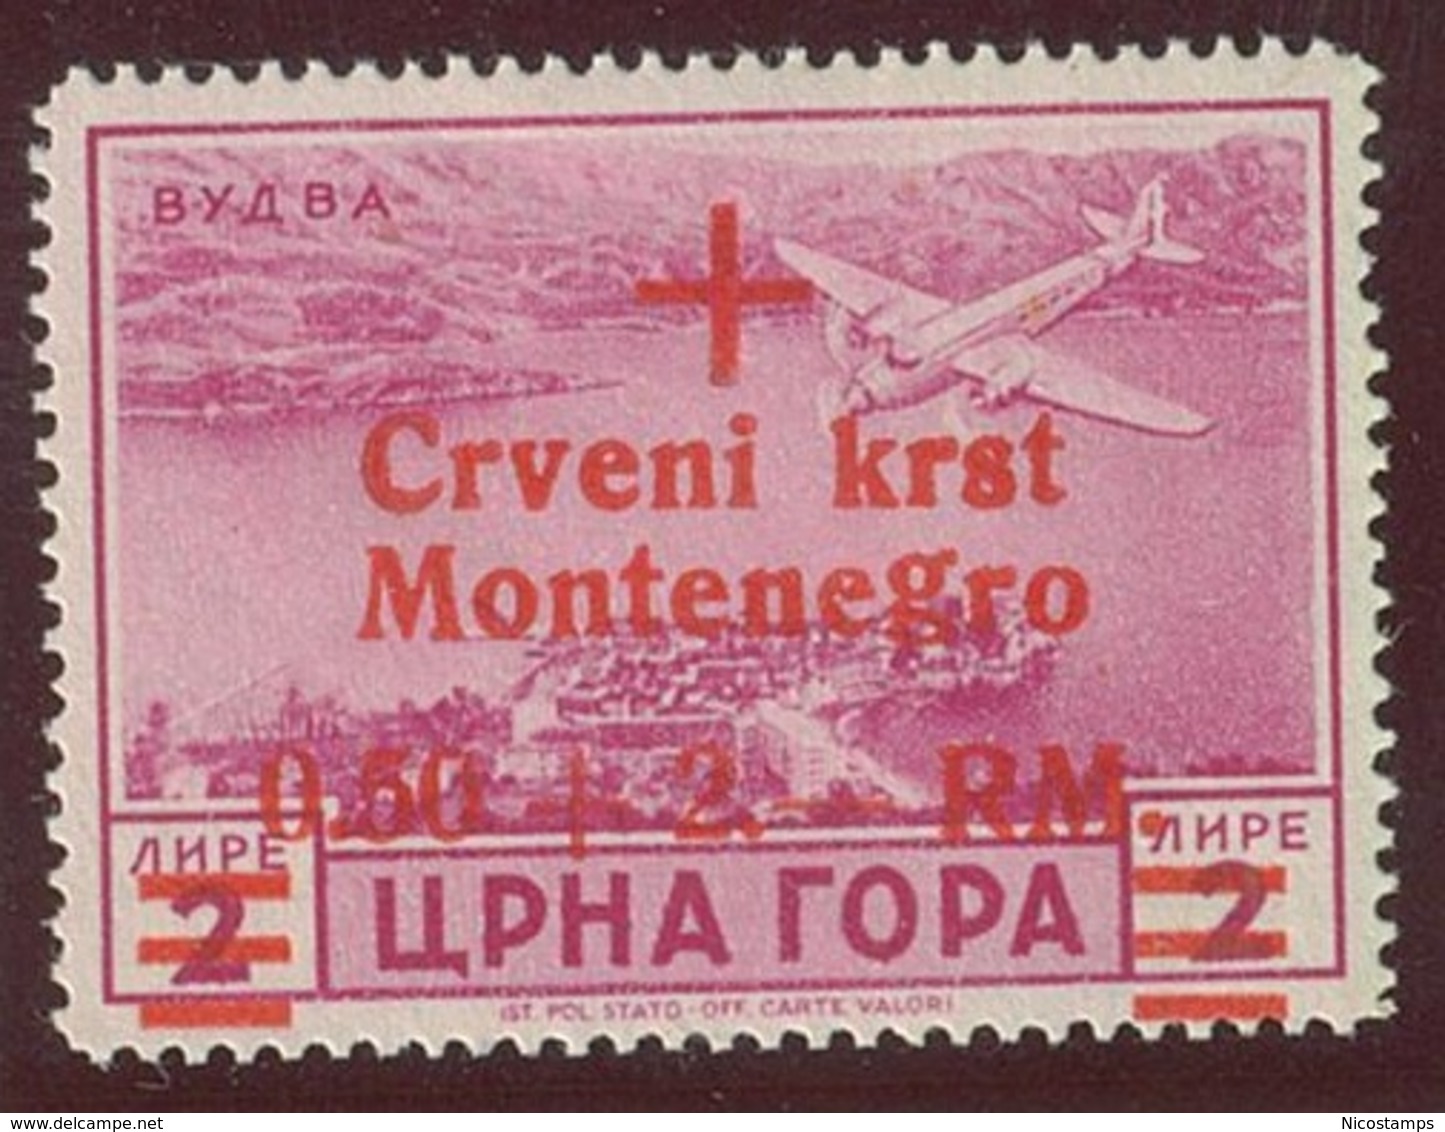 ITALIA - OCC. TEDESCA MONTENEGRO POSTA AEREA SASS. 11c NUOVO - German Occ.: Montenegro